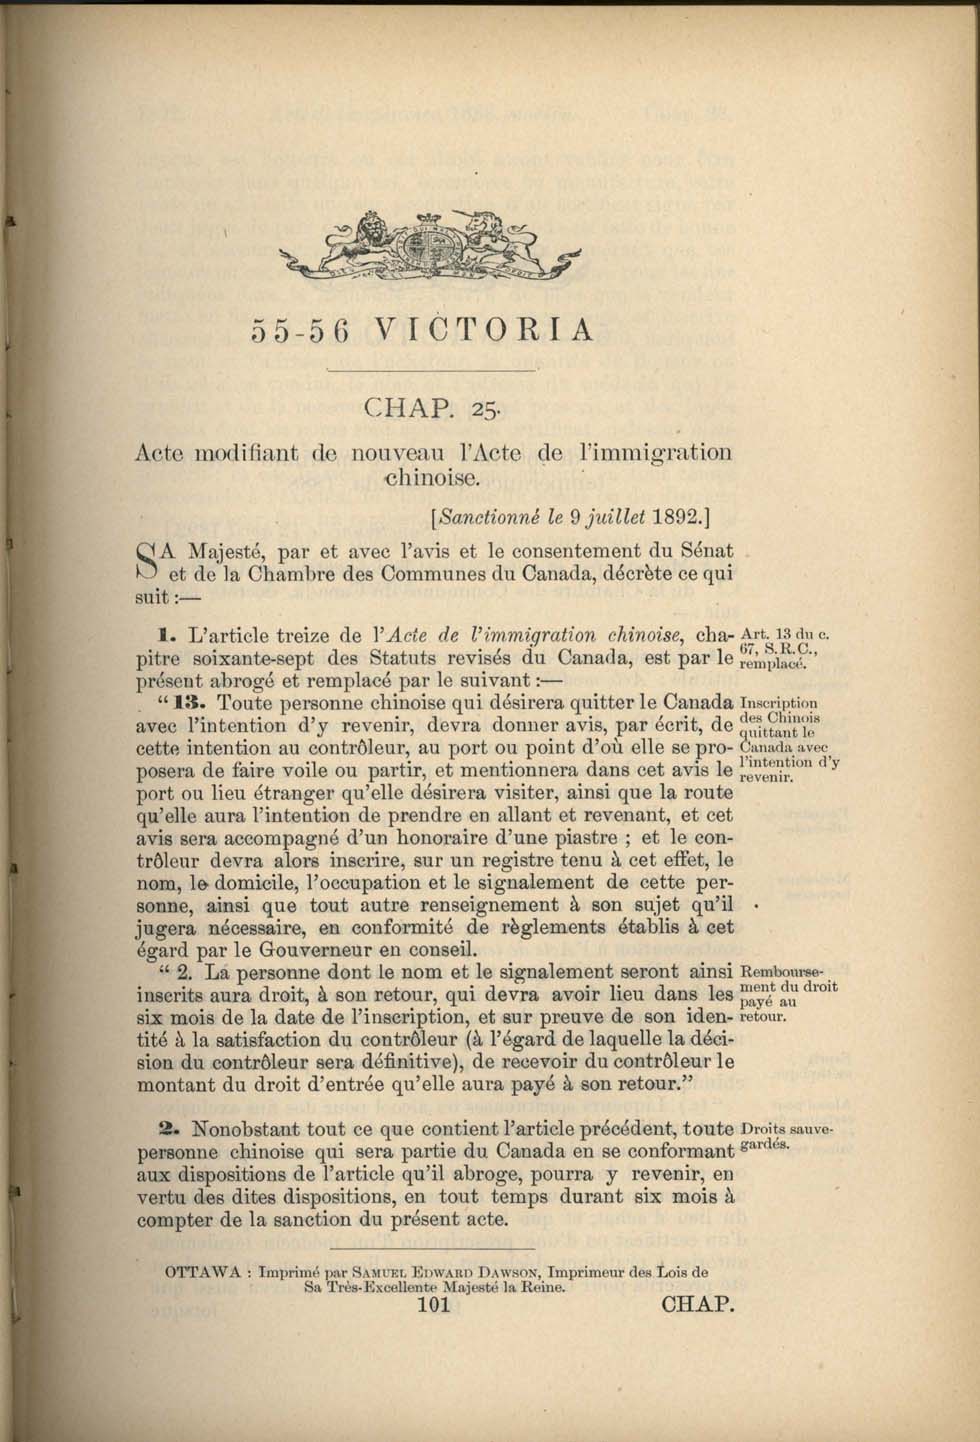 Chap 25 Page 101 Acte de l’immigration chinoise, 1885 Amendement 1892